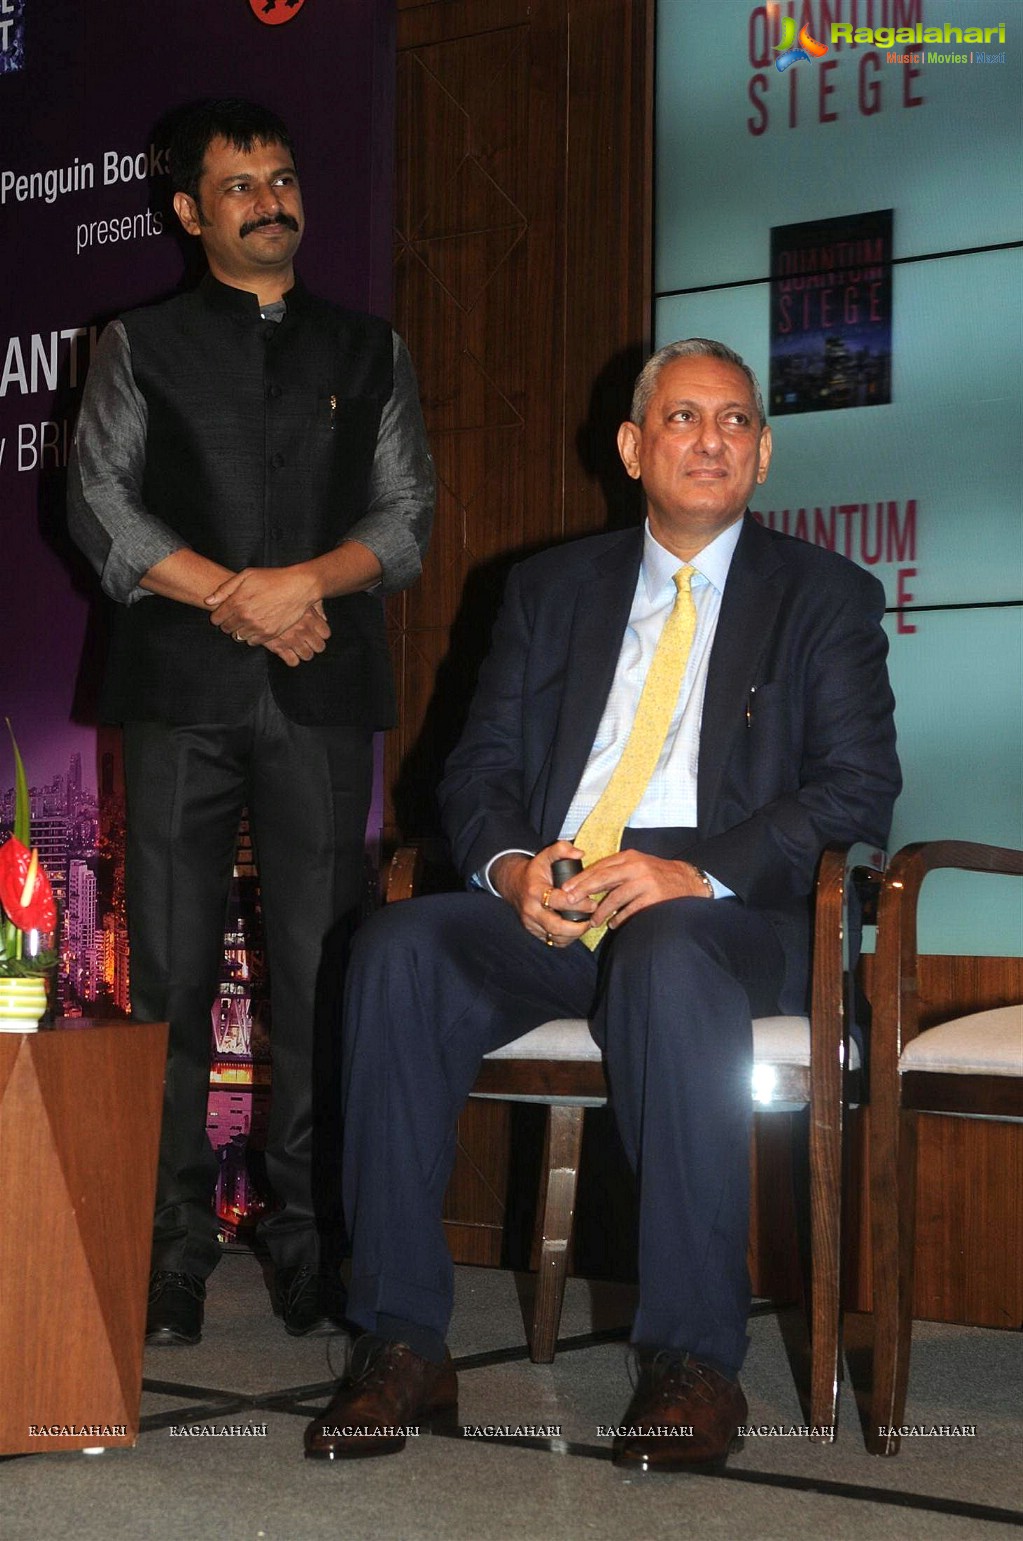 Amitabh Bachchan launches 'Quantum Siege' Book in Mumbai